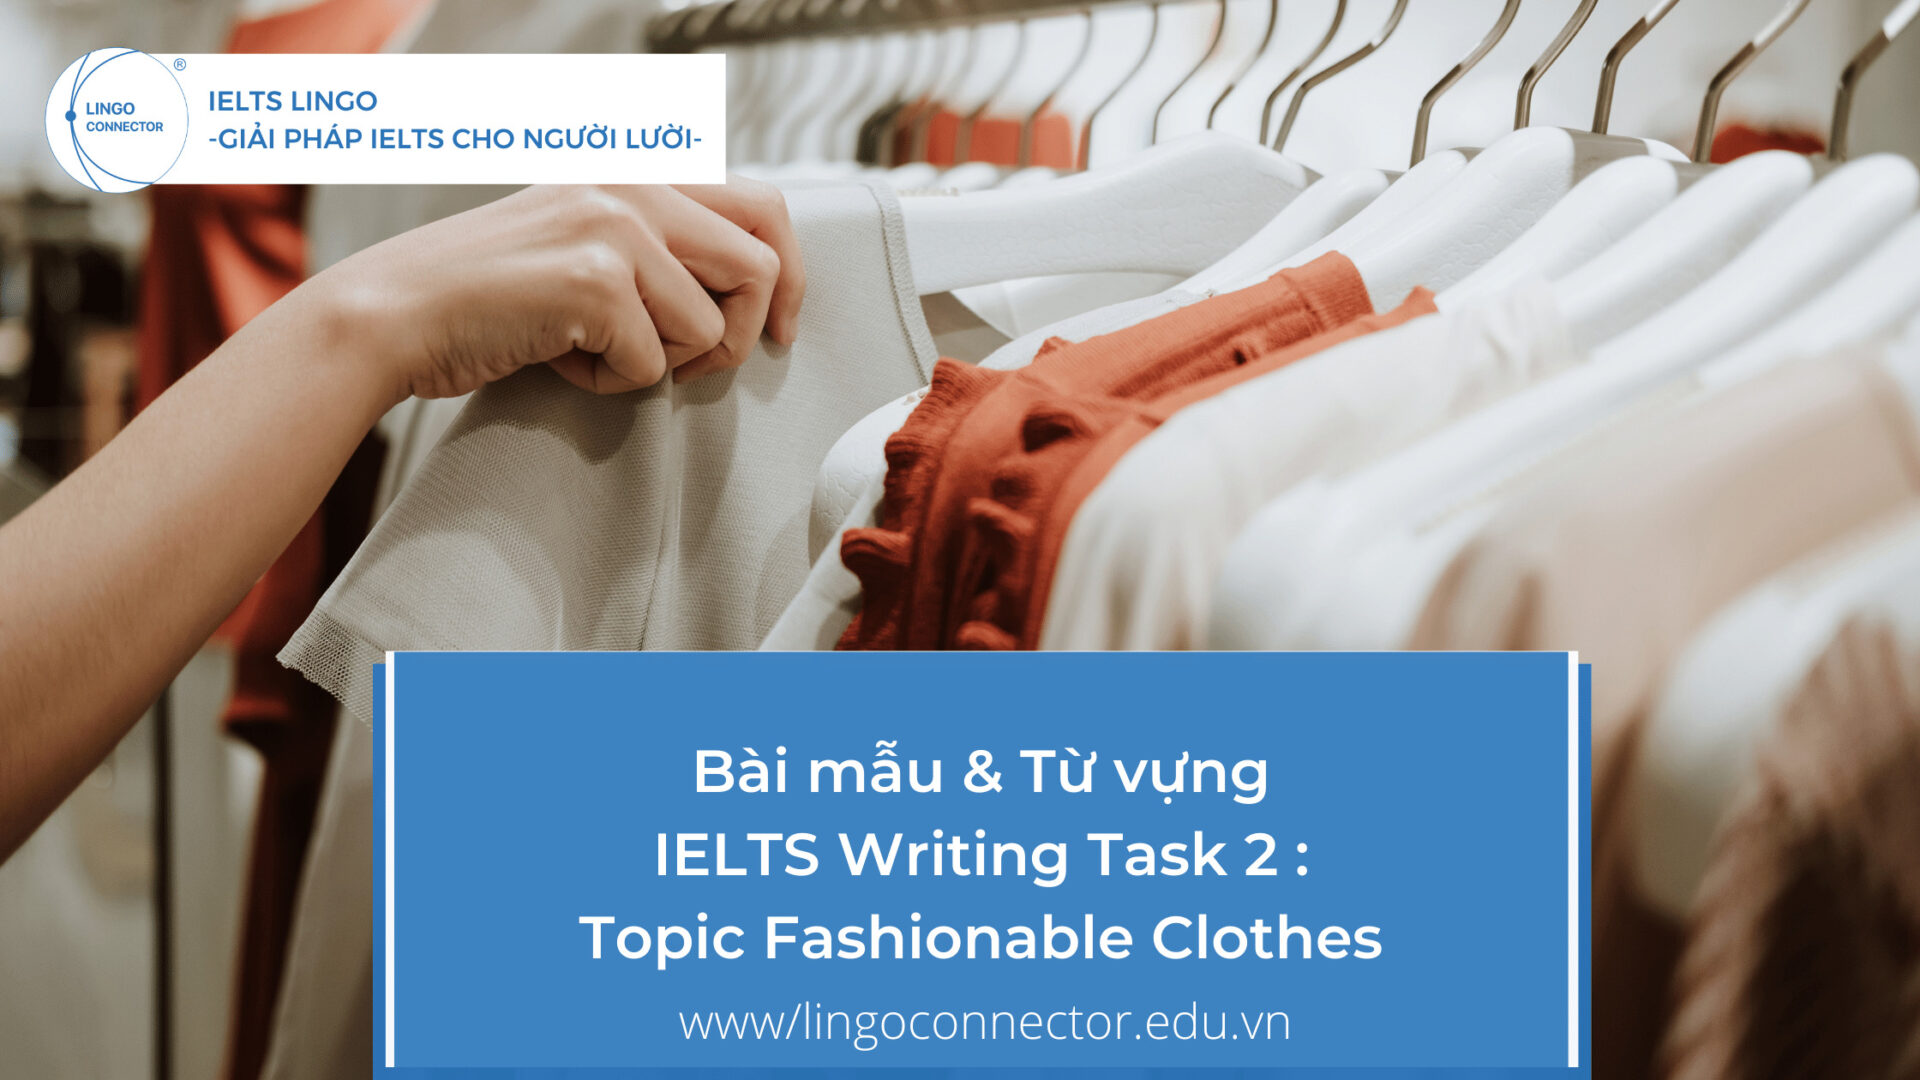 Bài mẫu & Từ vựng IELTS Writing Task 2 : Topic Fashionable Clothes